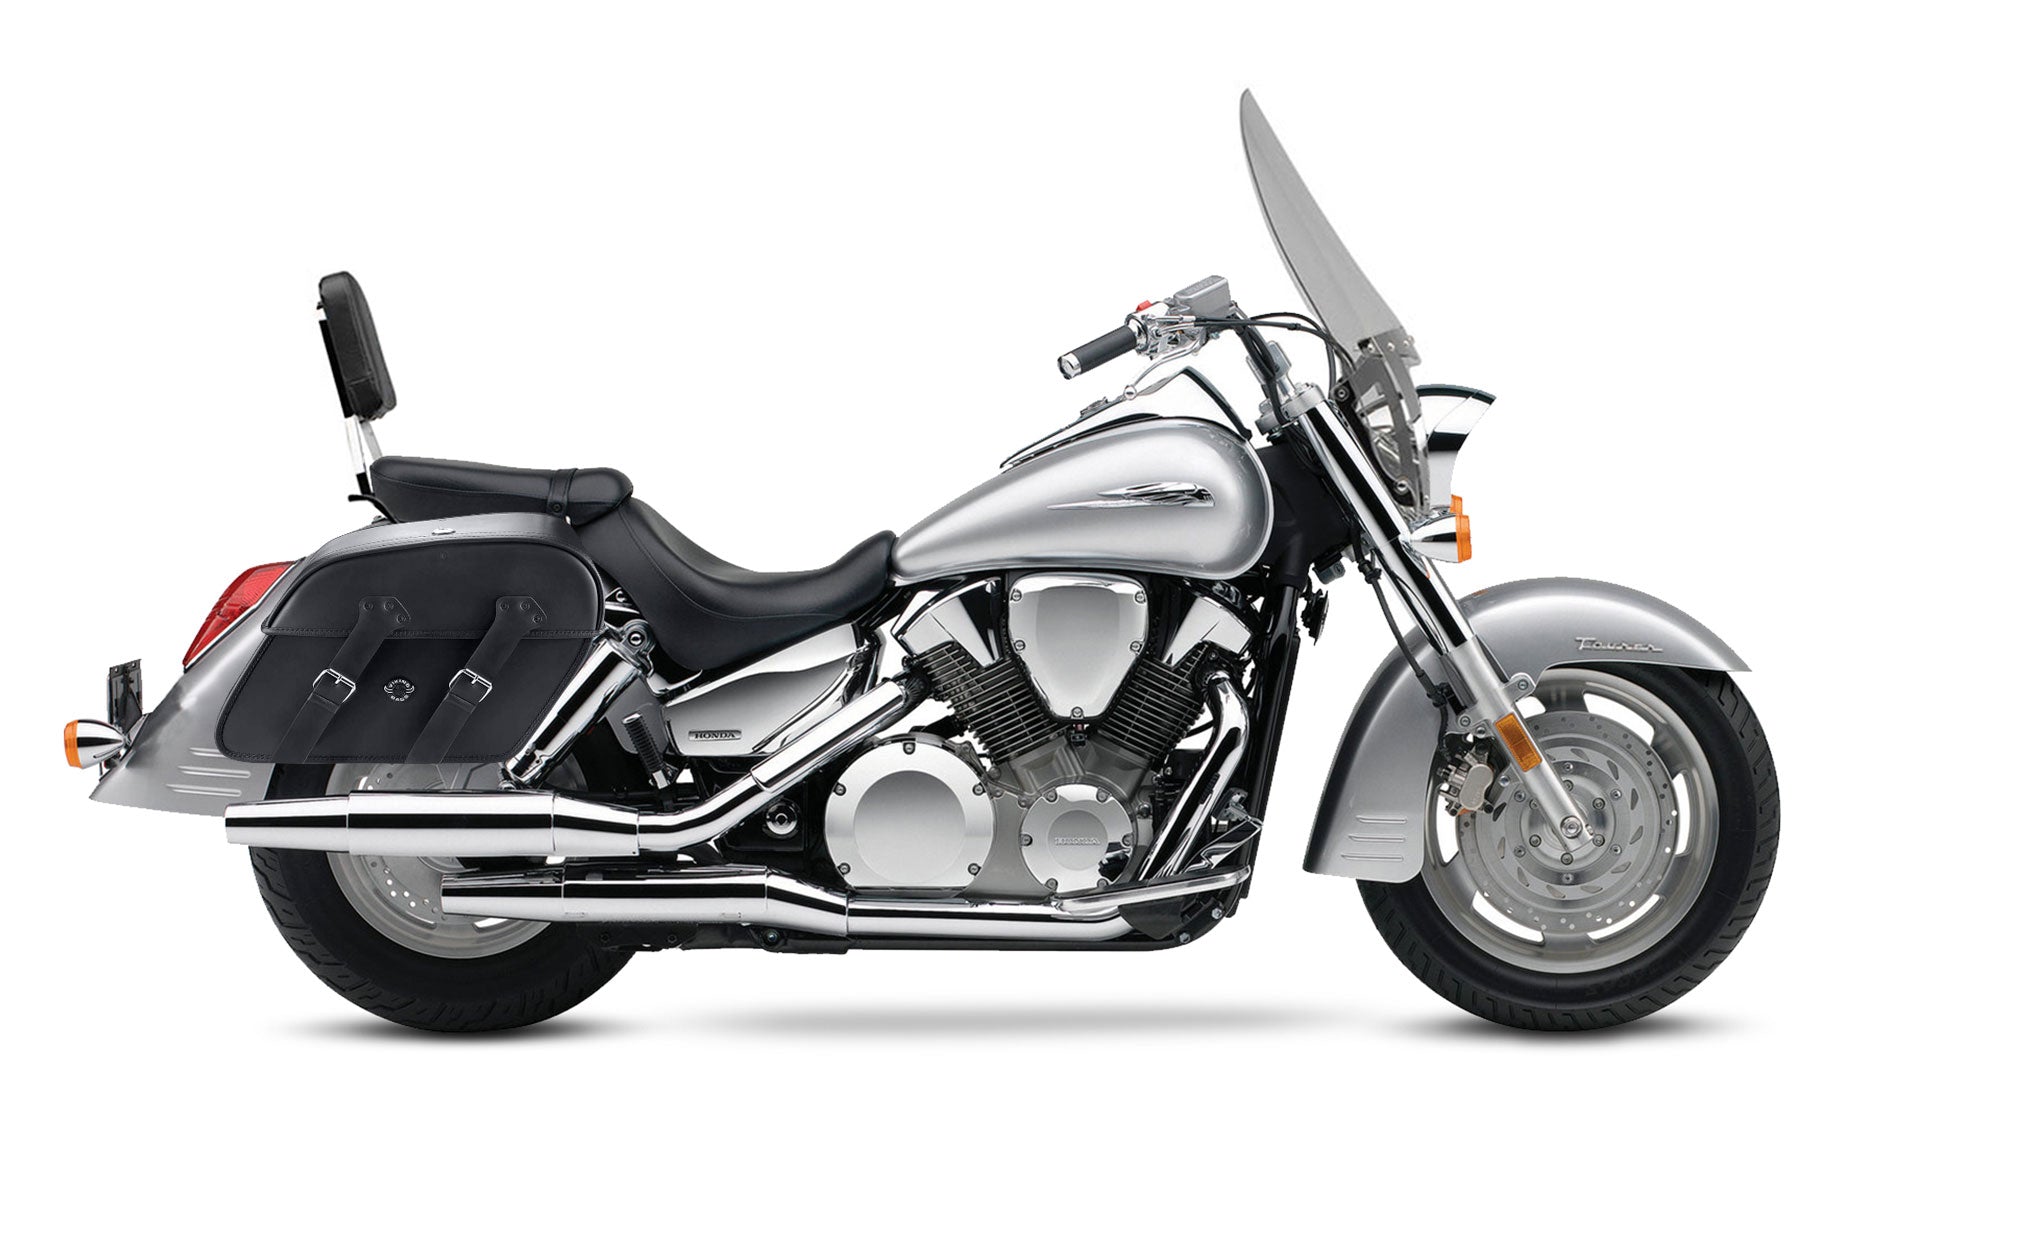 Viking Raven Extra Large Honda Vtx 1300 T Tourer Leather Motorcycle Saddlebags on Bike Photo @expand